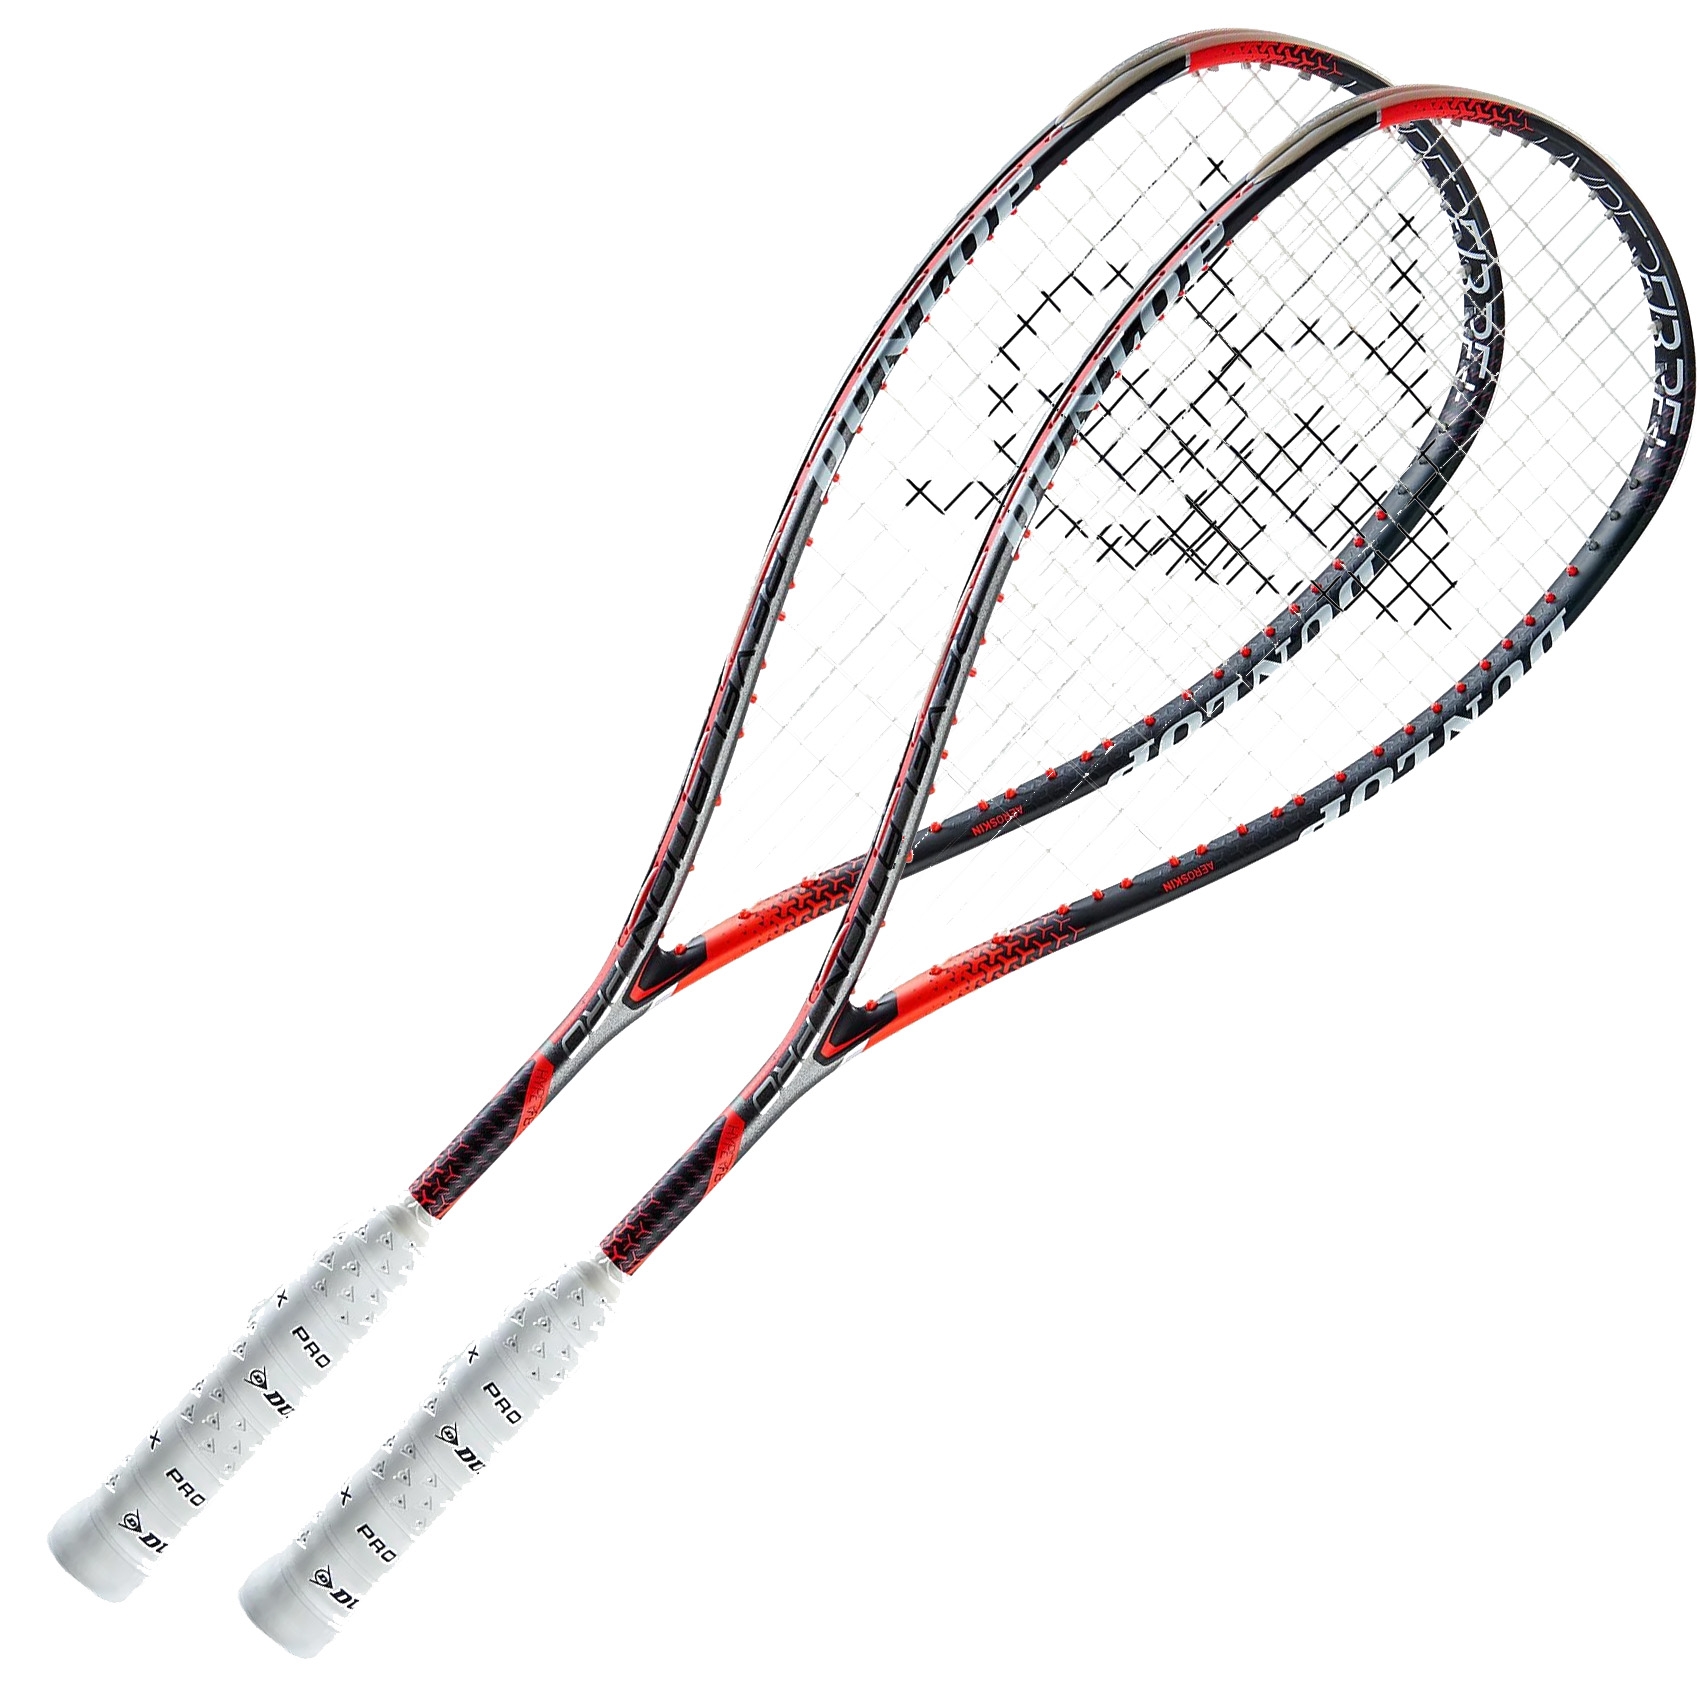 Dunlop Hyperfibre+ - 2 pcs. Squash